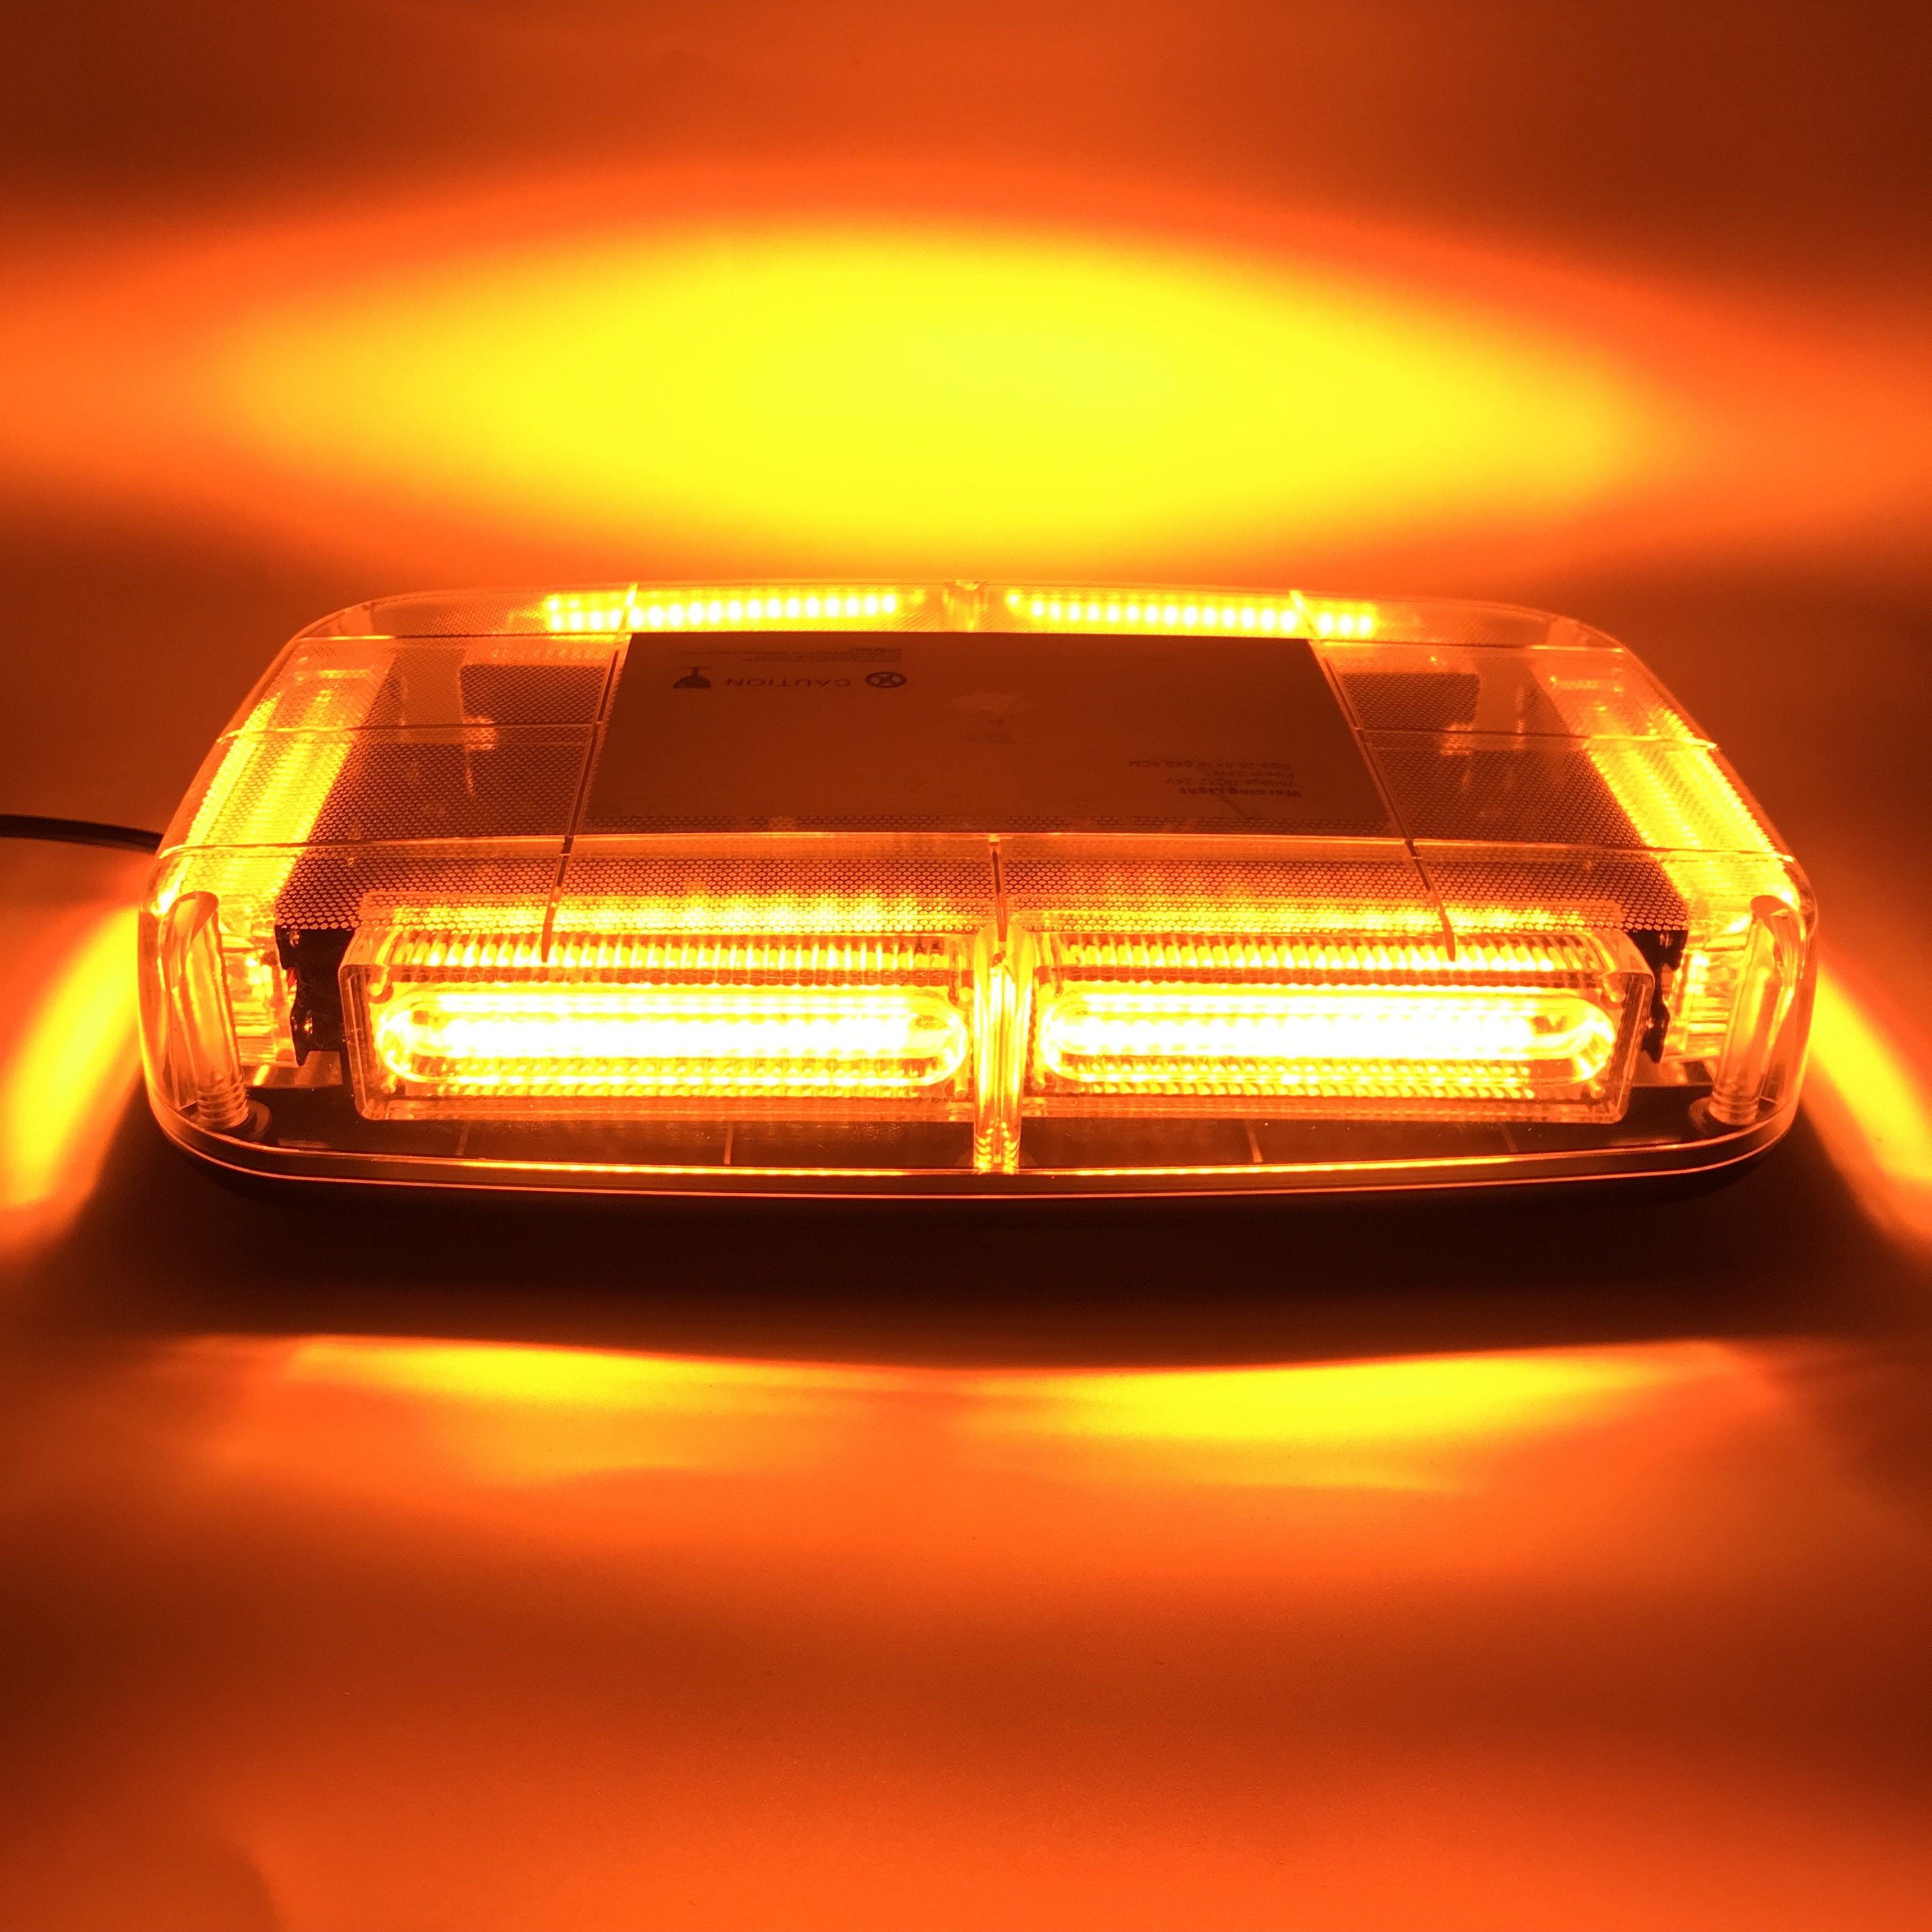 Gele Led Cob Auto Strobe Waarschuwingslampje Voertuig Dak Knipperen Baken Politie Strobe Emergency Signaal Lamp DC12 ~ 24V